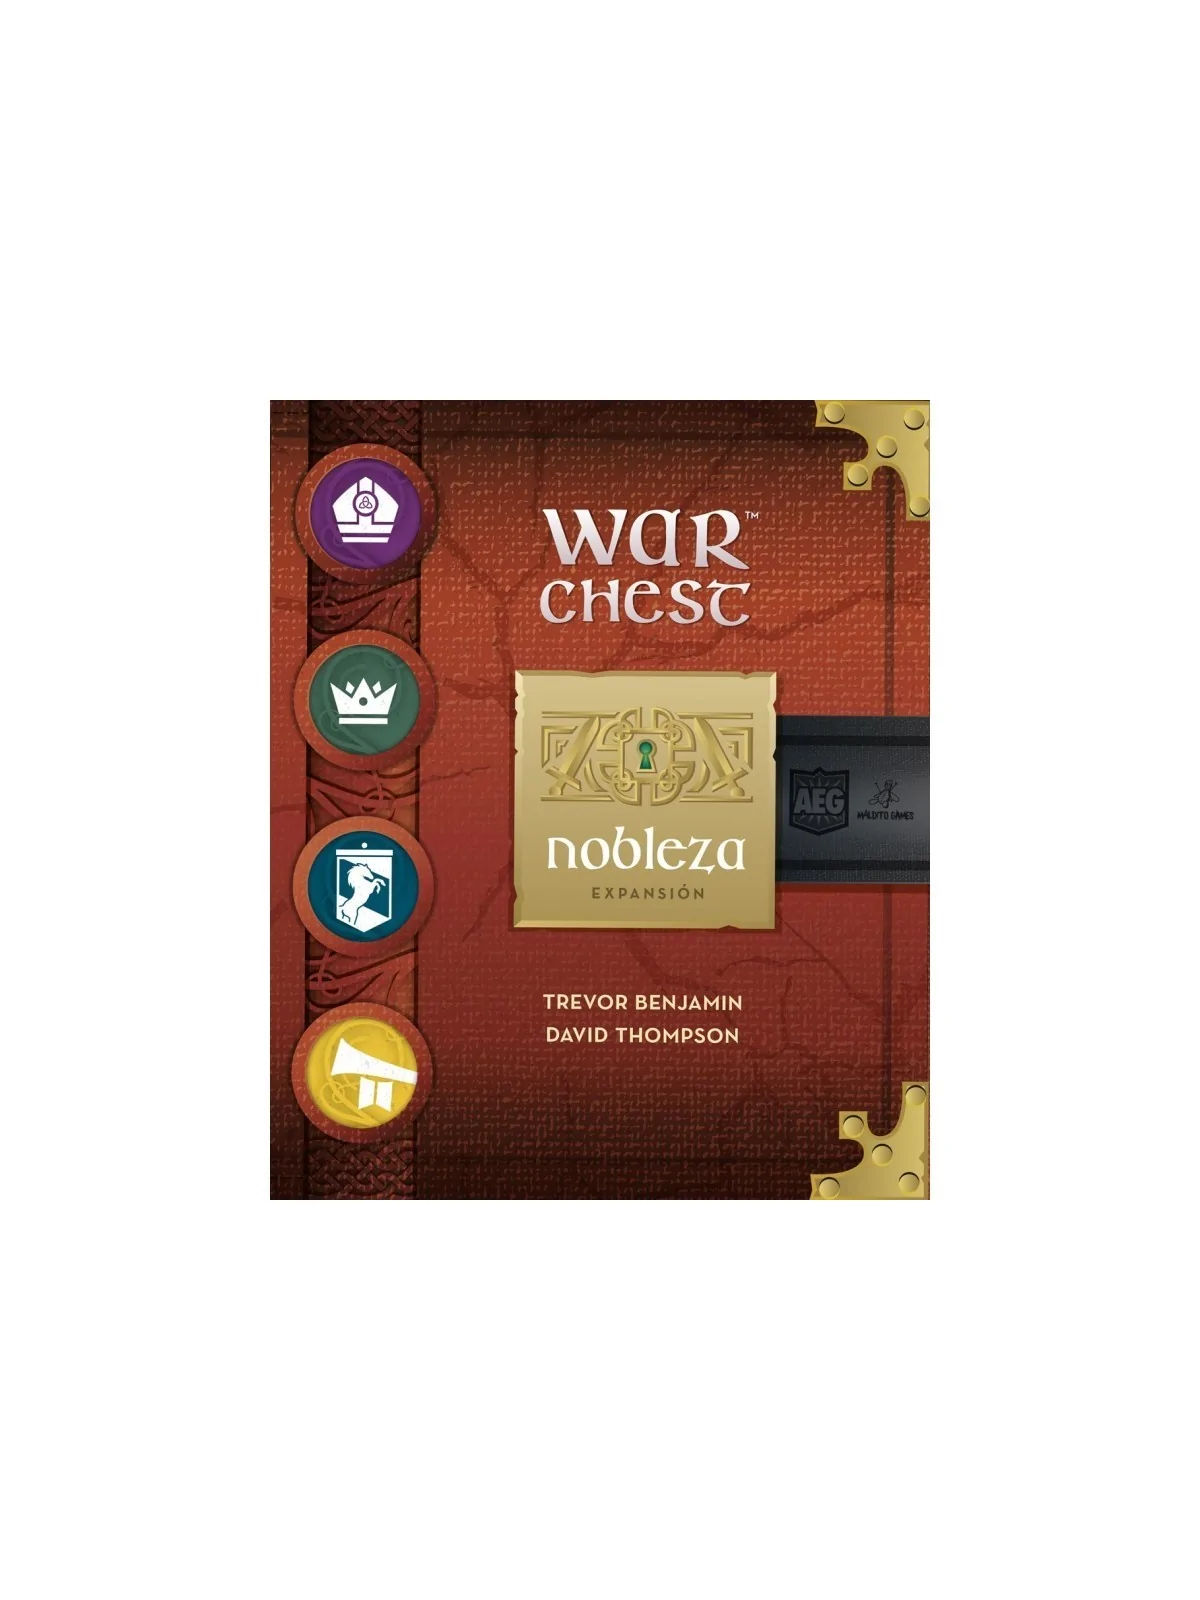 Comprar War Chest: Nobleza barato al mejor precio 22,50 € de Maldito G